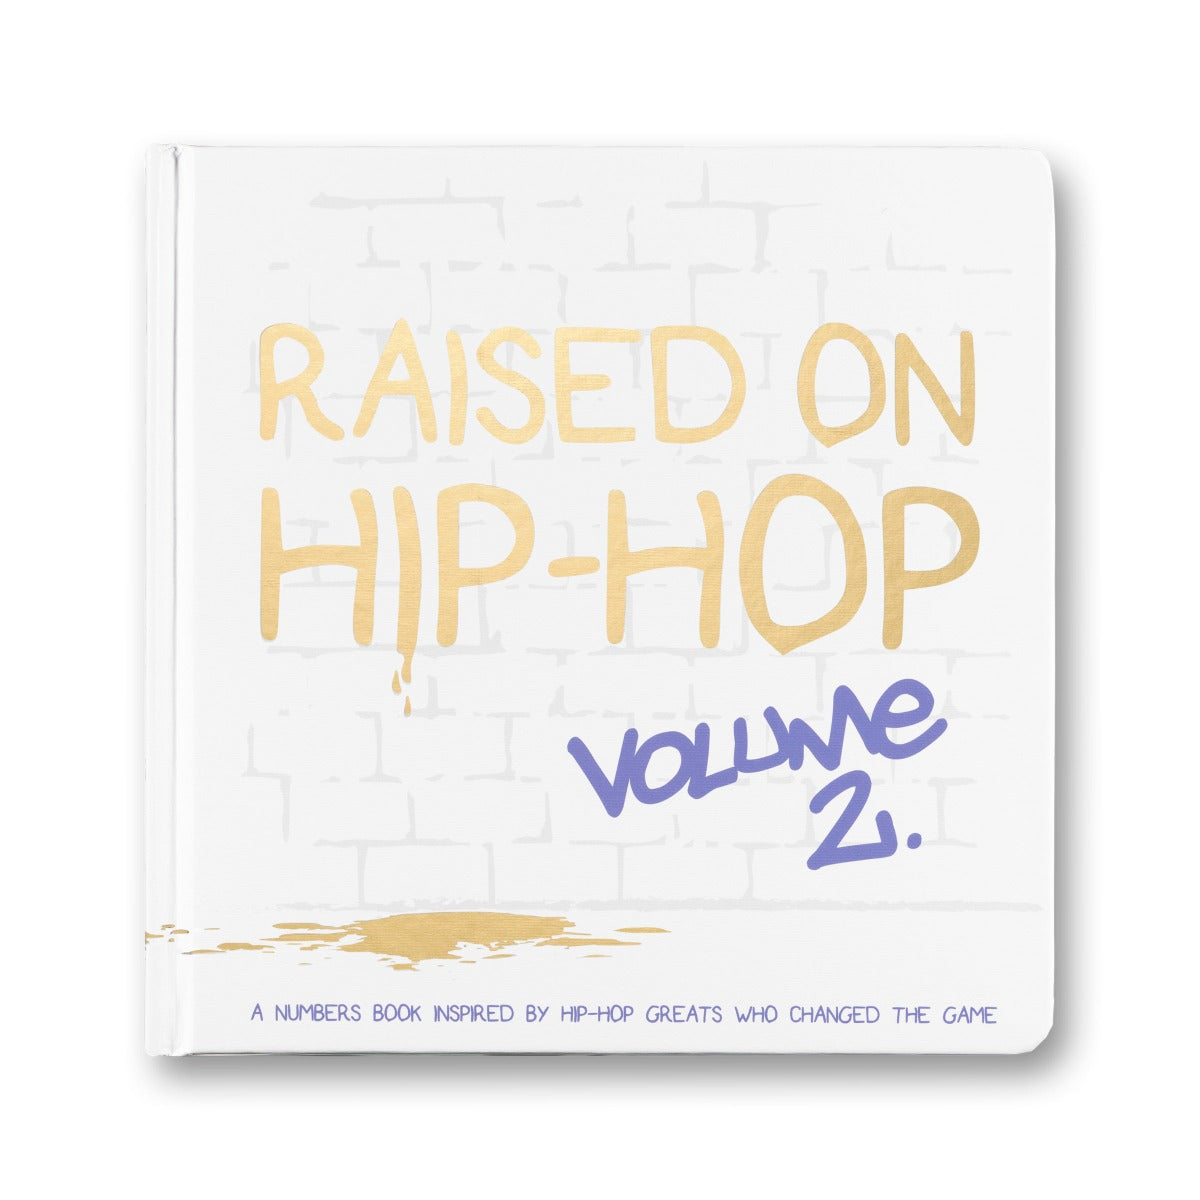 Raised On Hip-Hop Volume 2 - Numbers